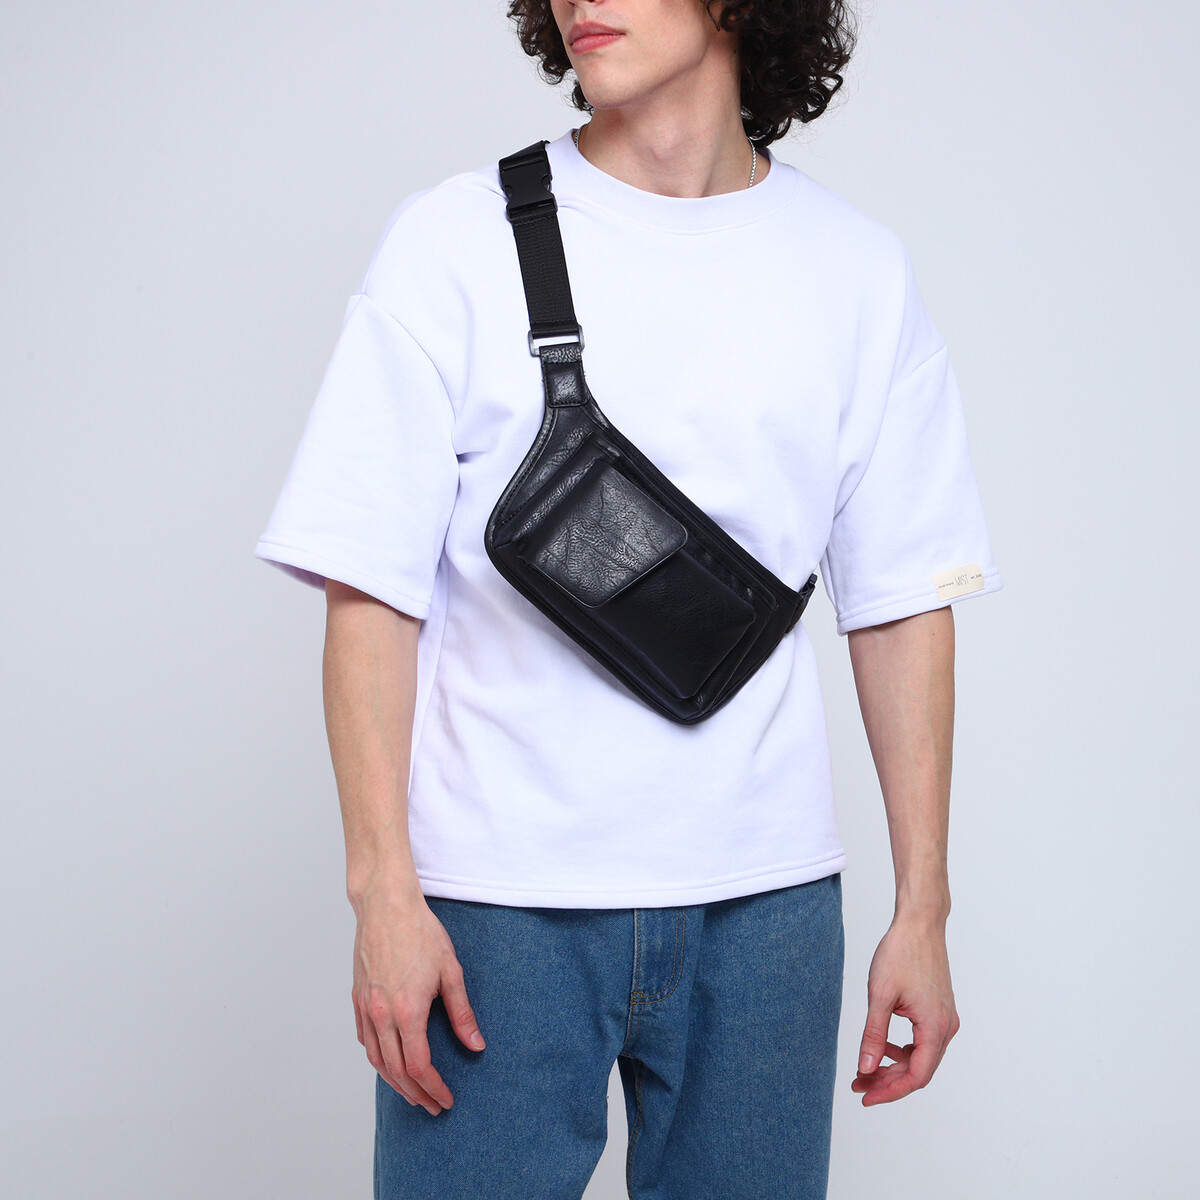 Поясная сумка на молнии, 3 наружных кармана, цвет черный поясная сумка на молнии 3 наружных кармана зацеп на ногу